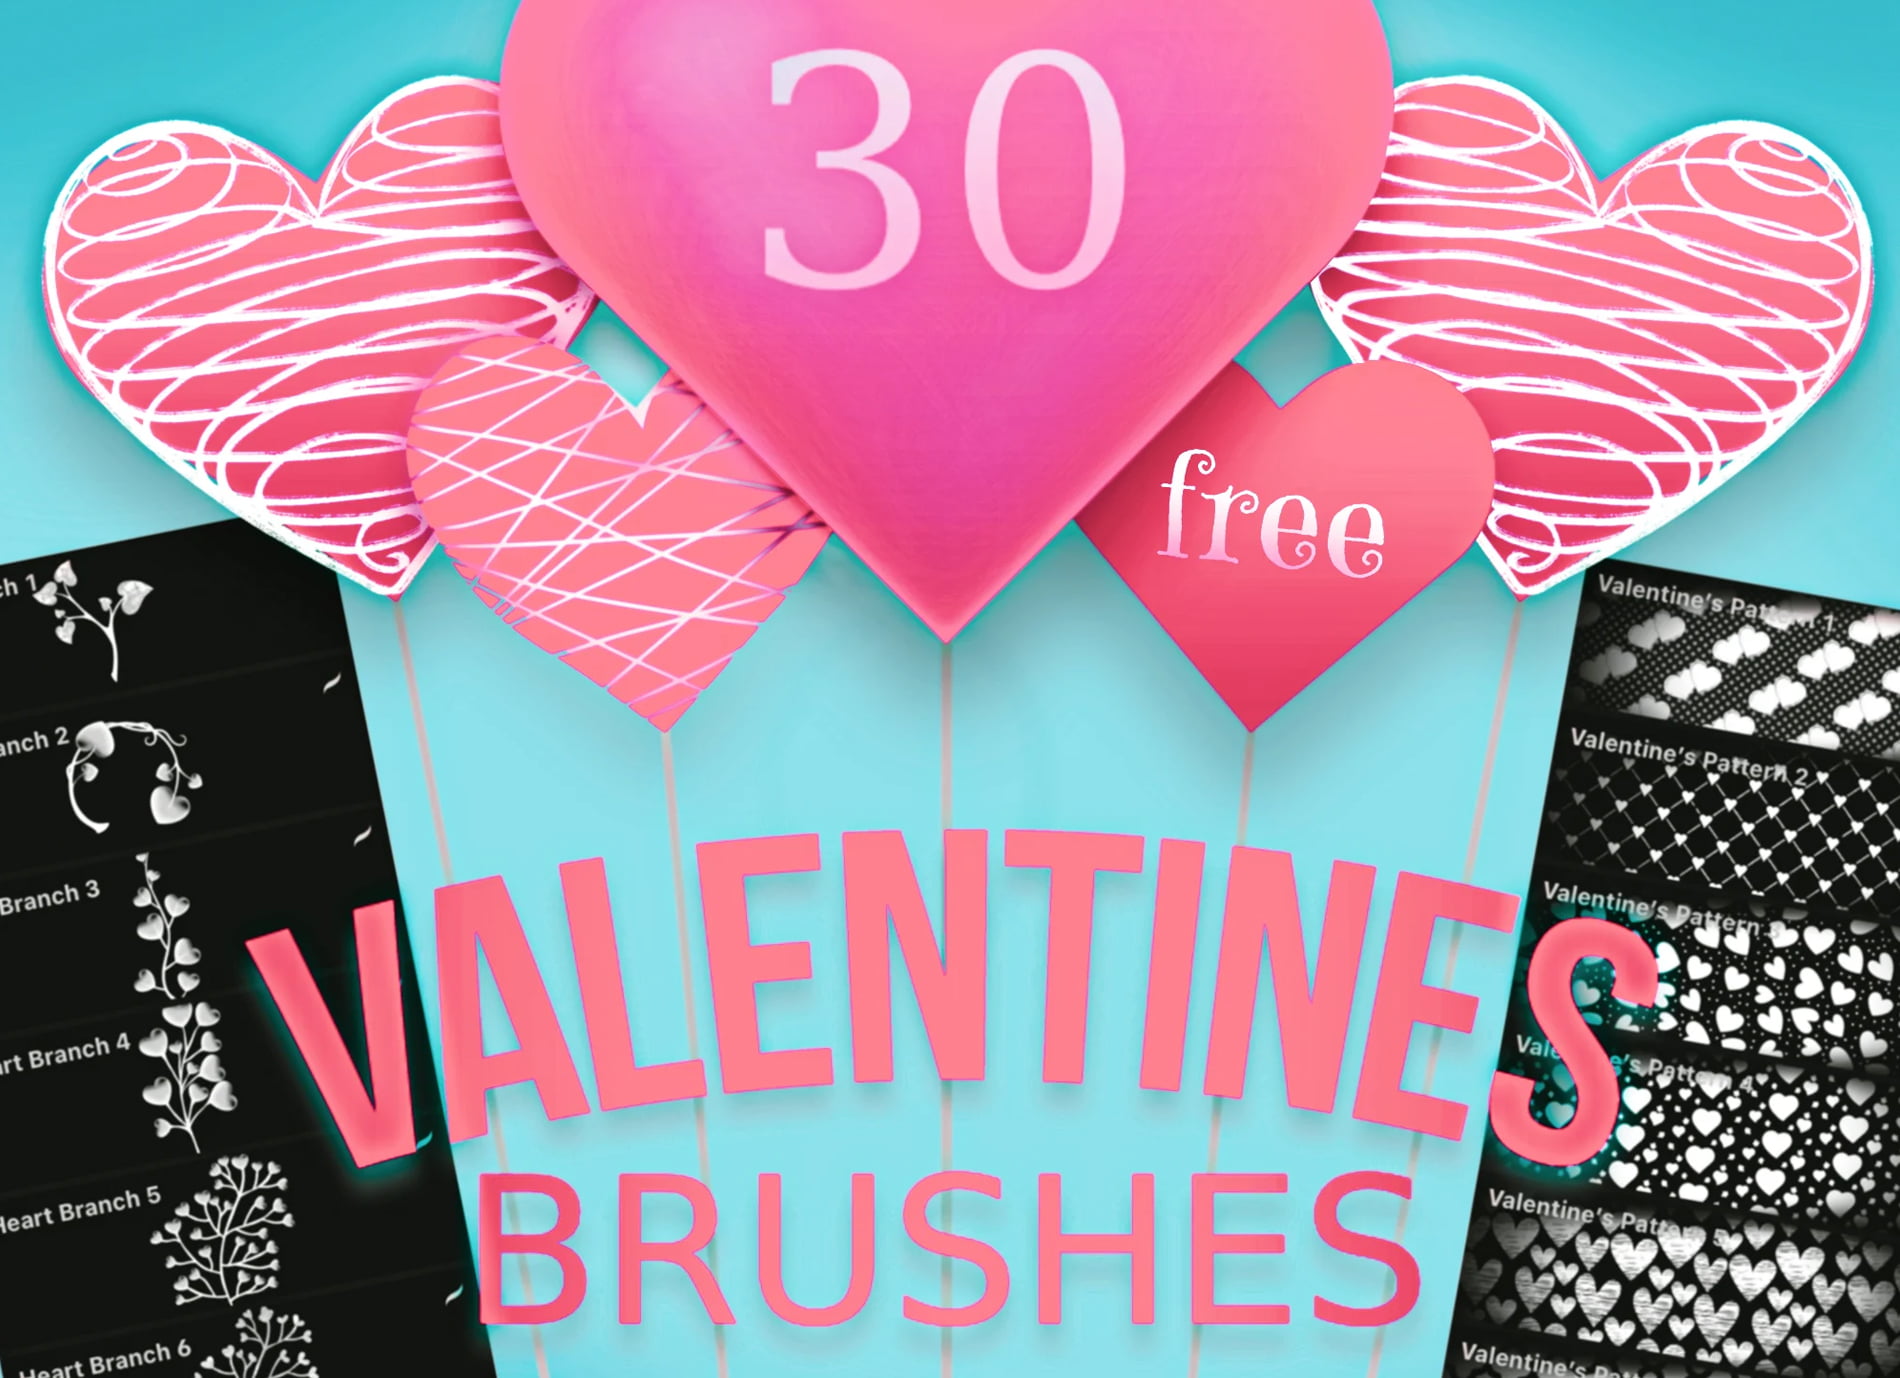 procreate valentine brushes free